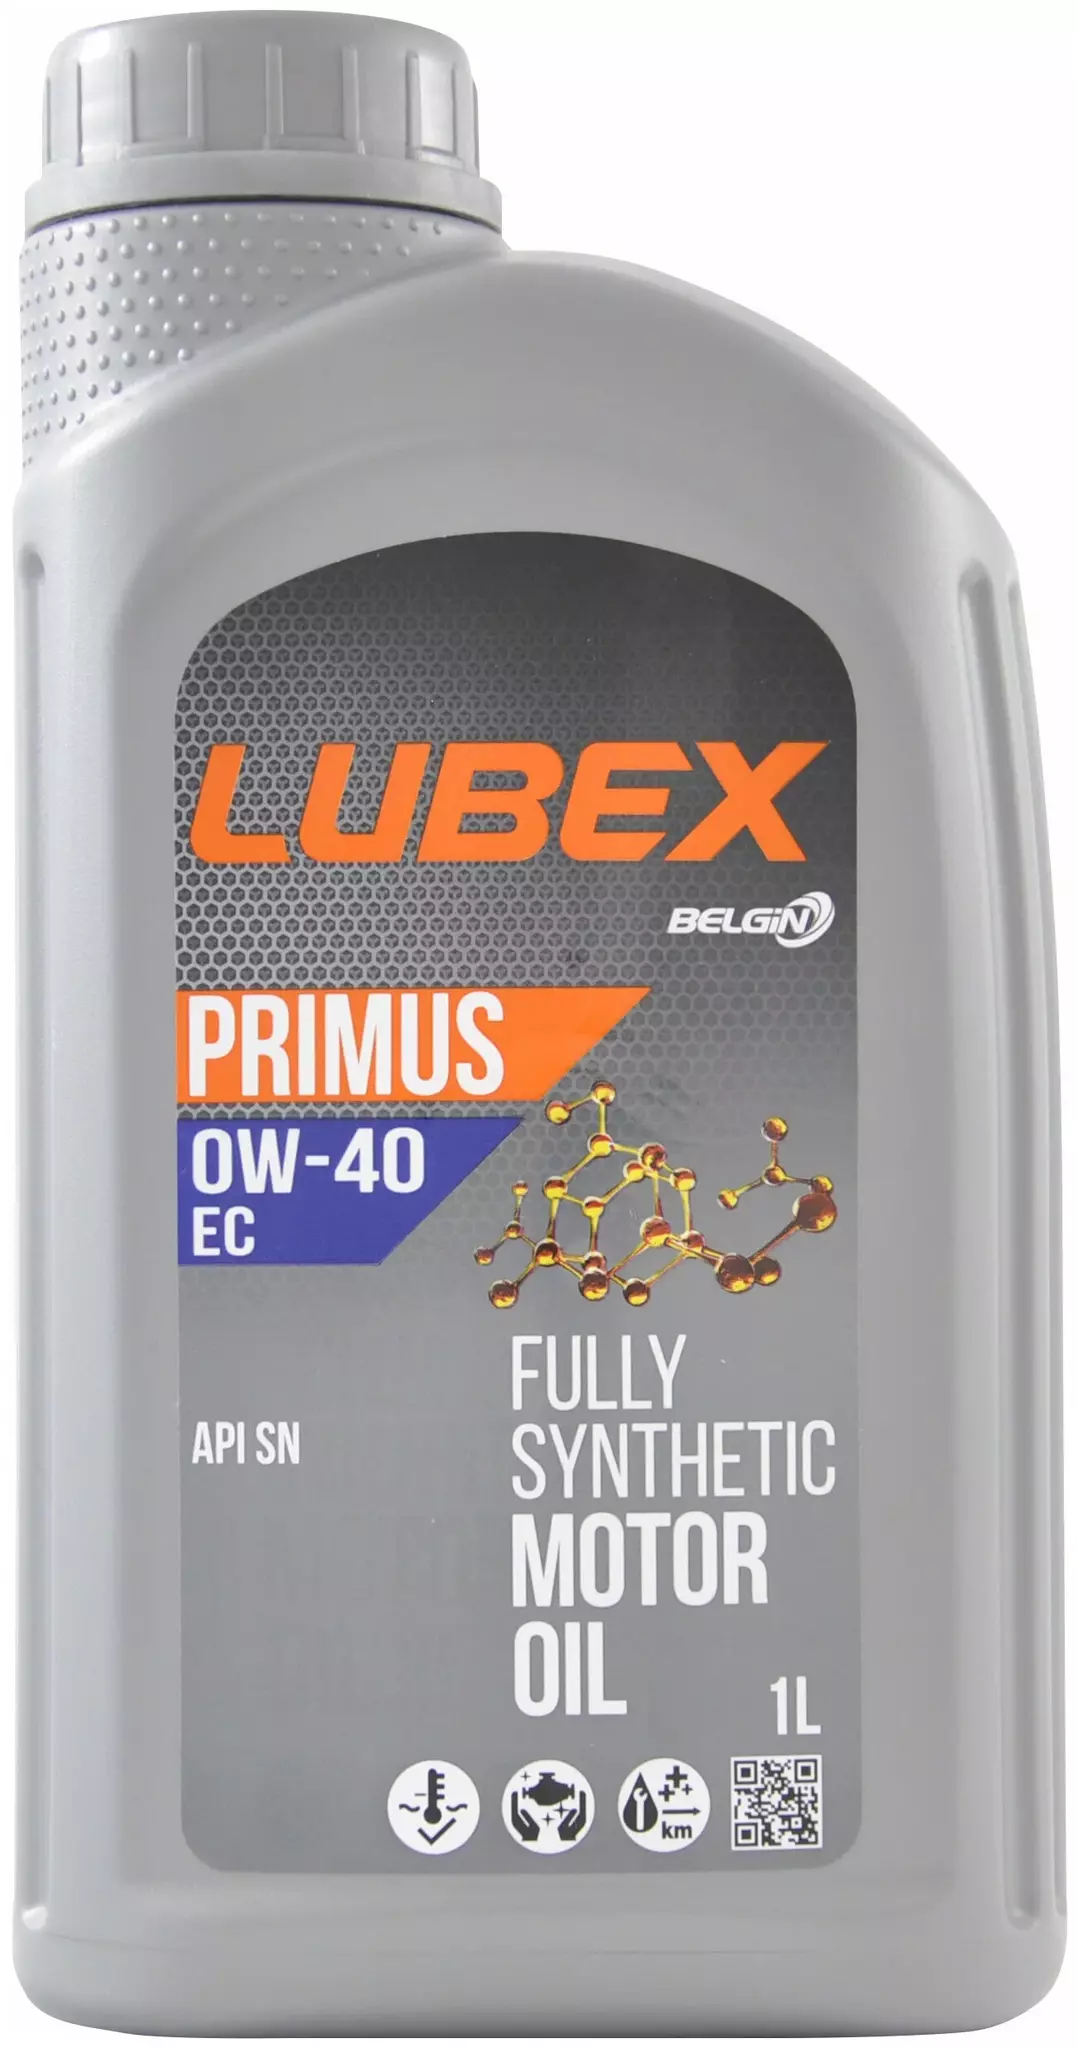 Синетическое масло LUBEX PRIMUS EC 0W-40 SN 1л